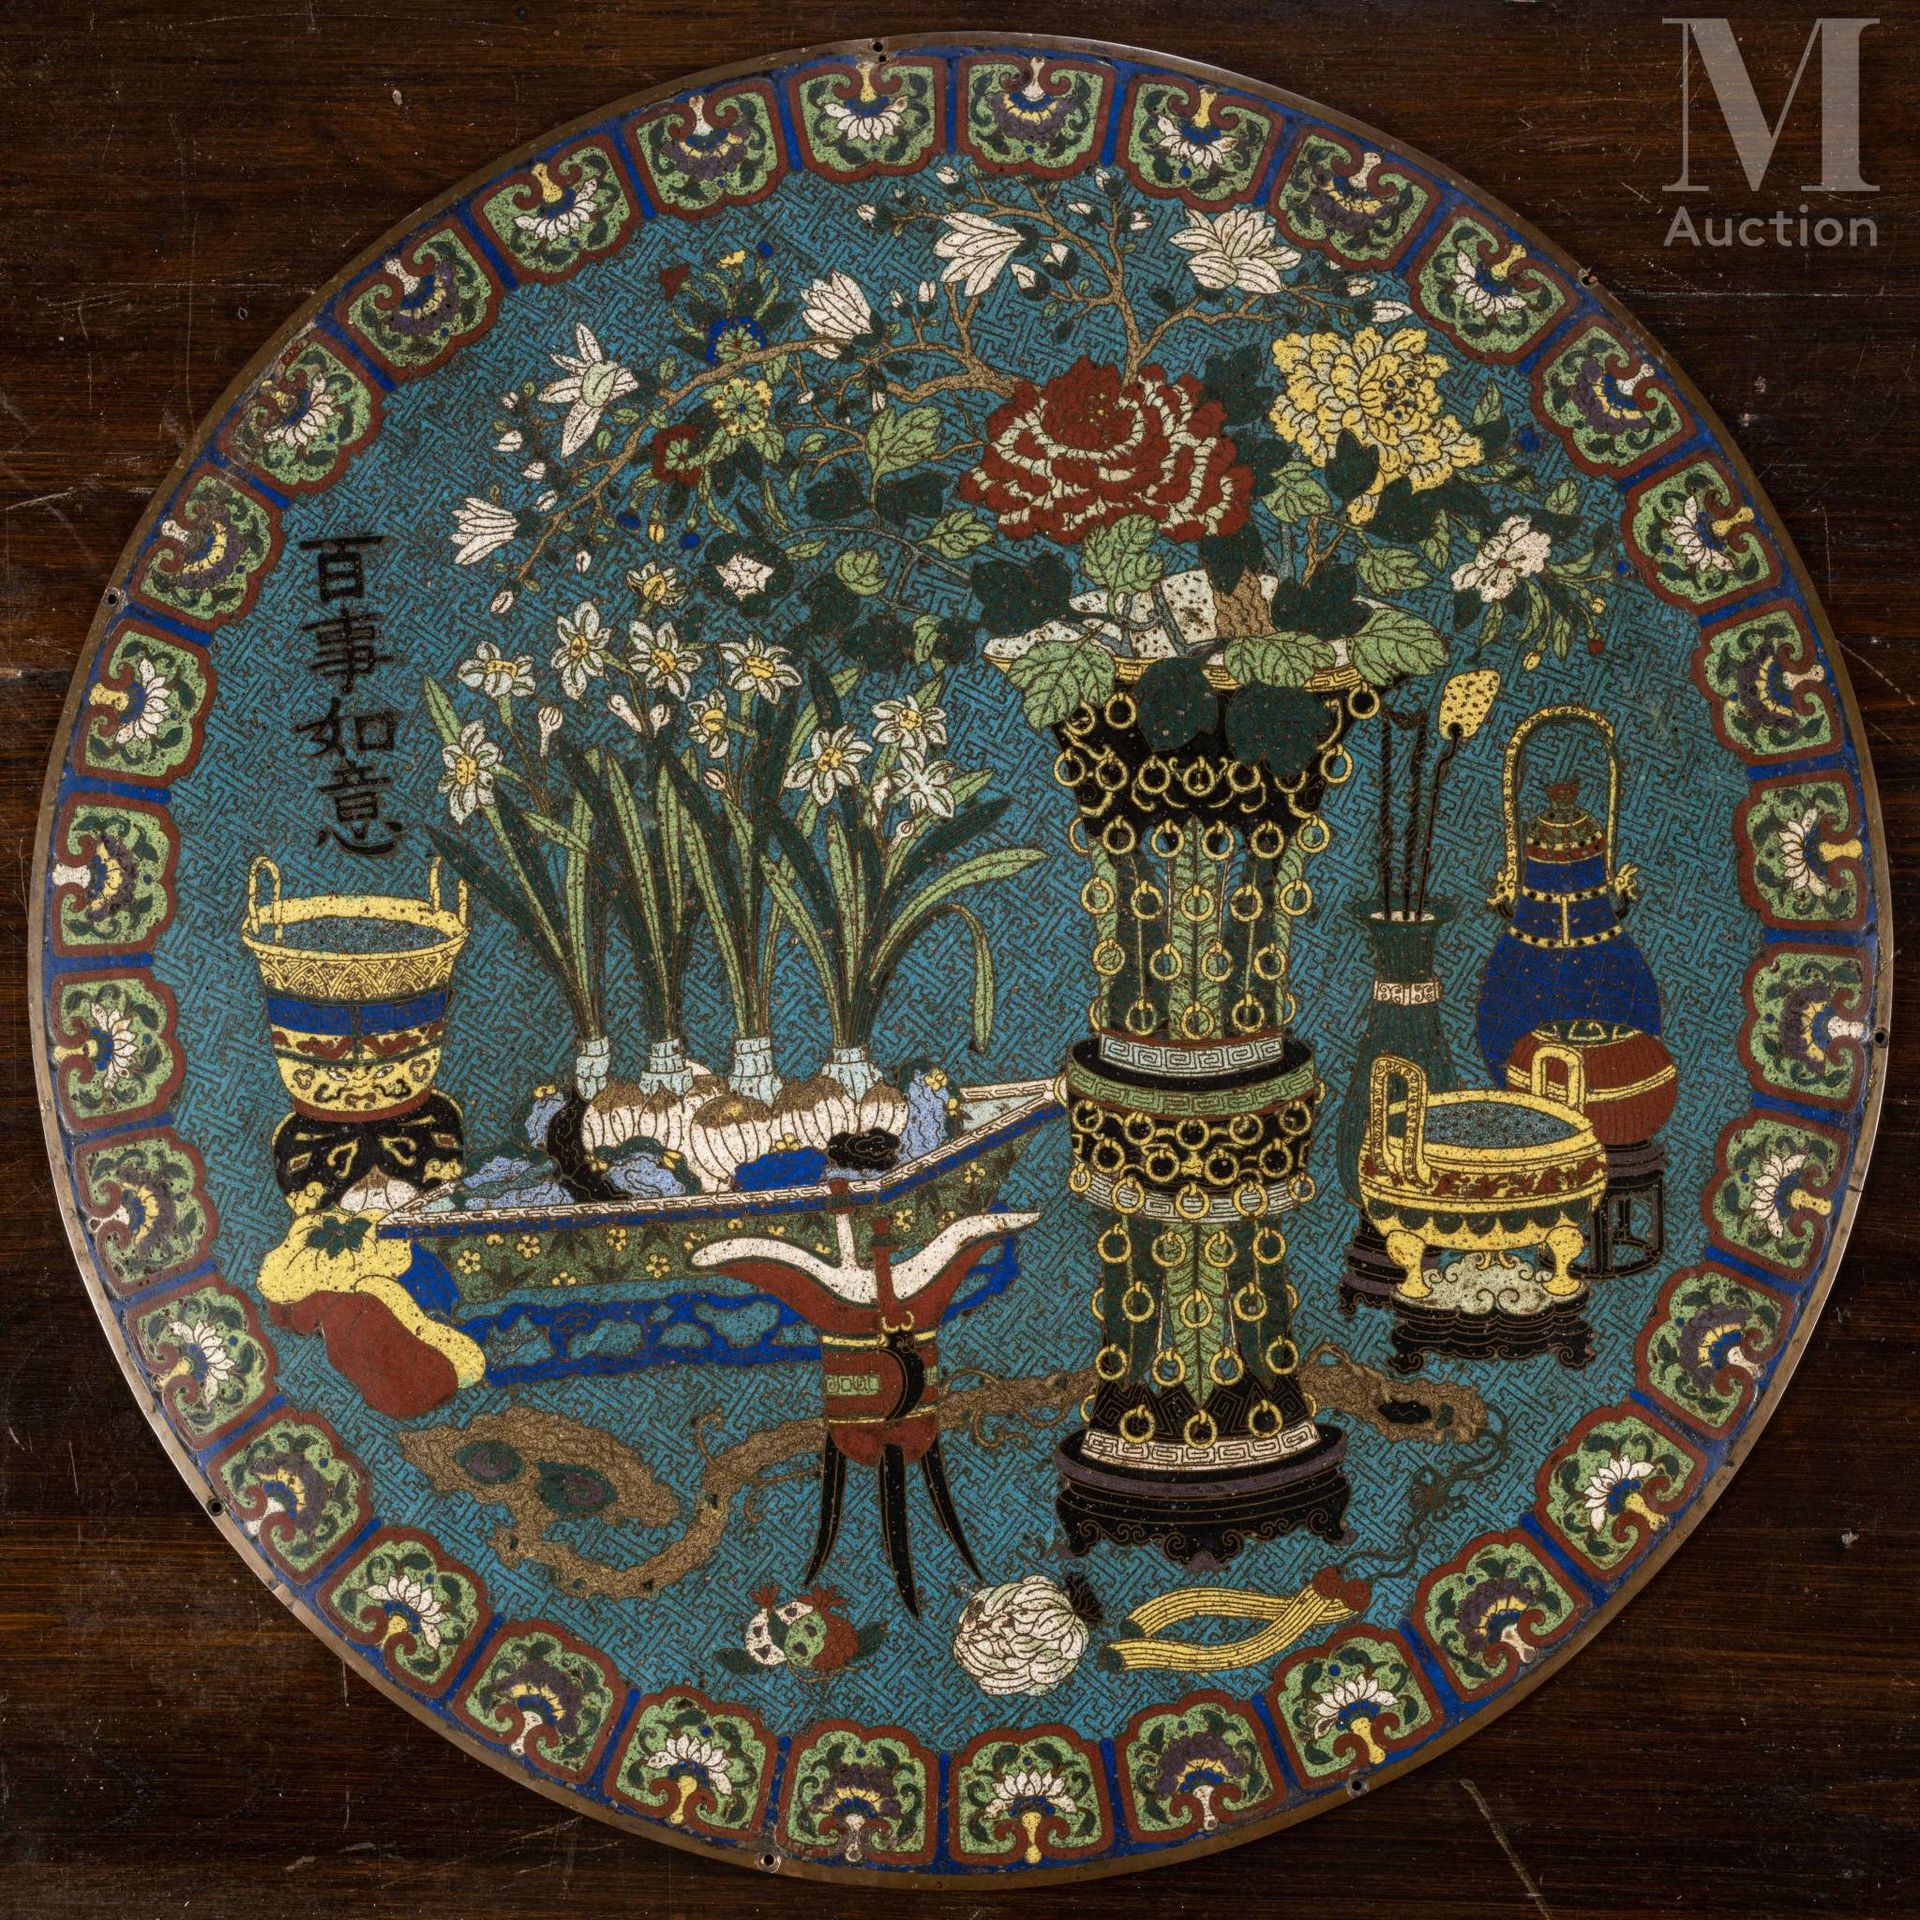 CHINE, XIXe siècle 优雅的景泰蓝珐琅彩匾额，圆形，呈现出古董、学问物品和季节性花卉的装饰，包括一个吉祥的铭文 "百事如意"（bai shi r&hellip;